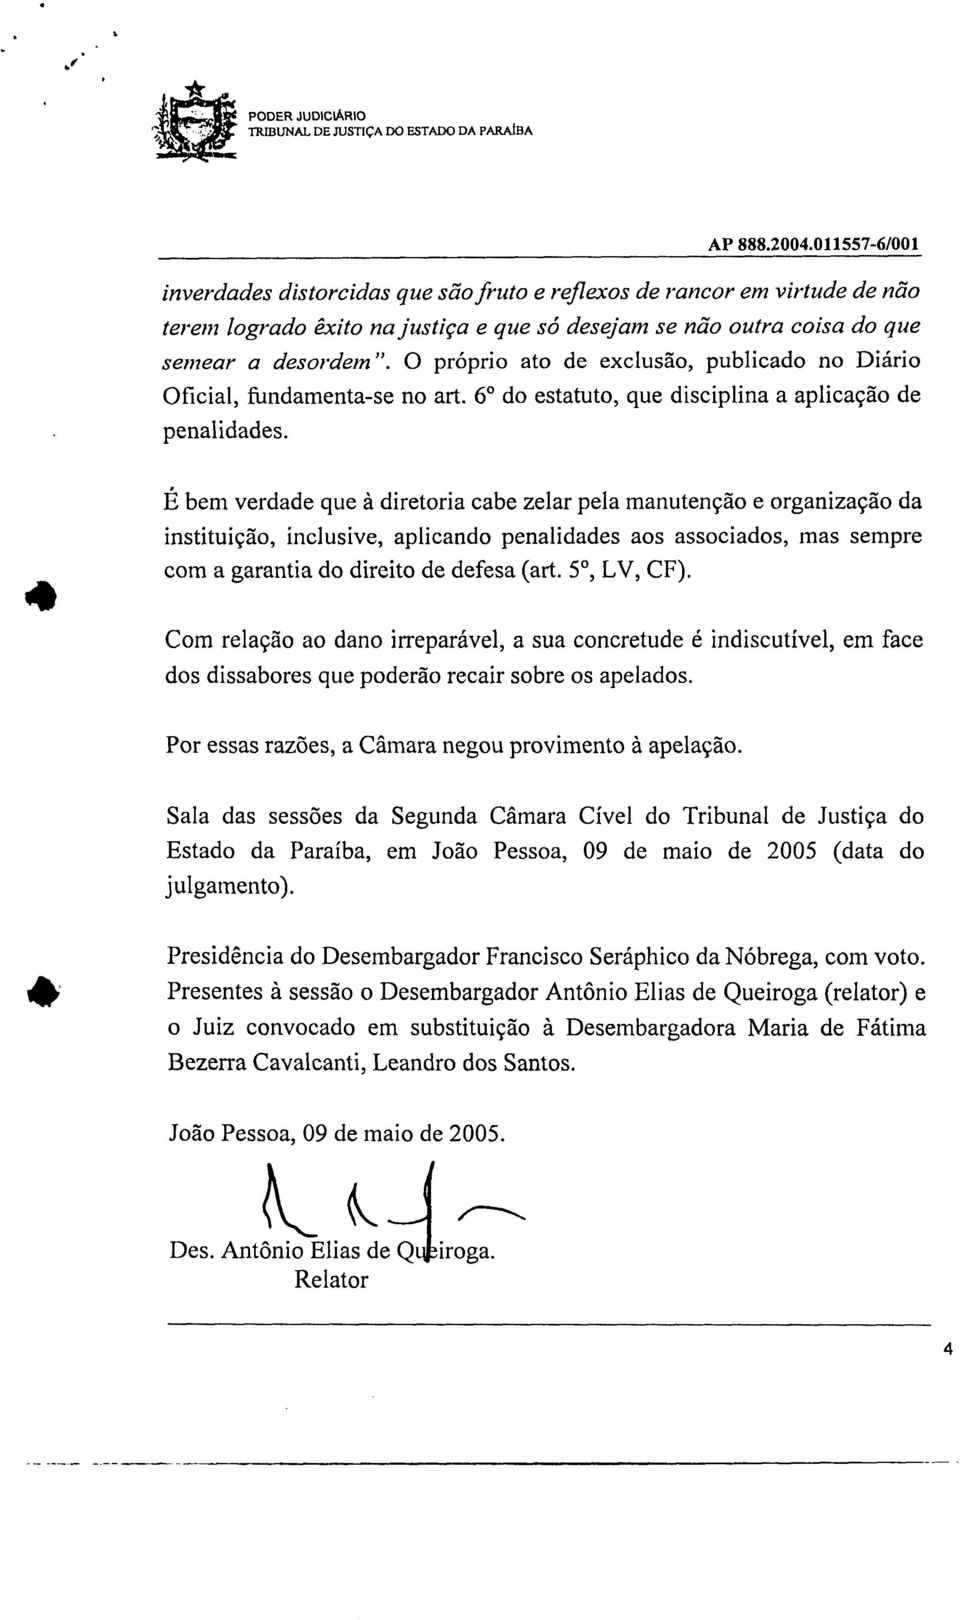 desordem". O próprio ato de exclusão publicado no Diário Oficial fundamenta-se no art. 6 do estatuto que disciplina a aplicação de penalidades.